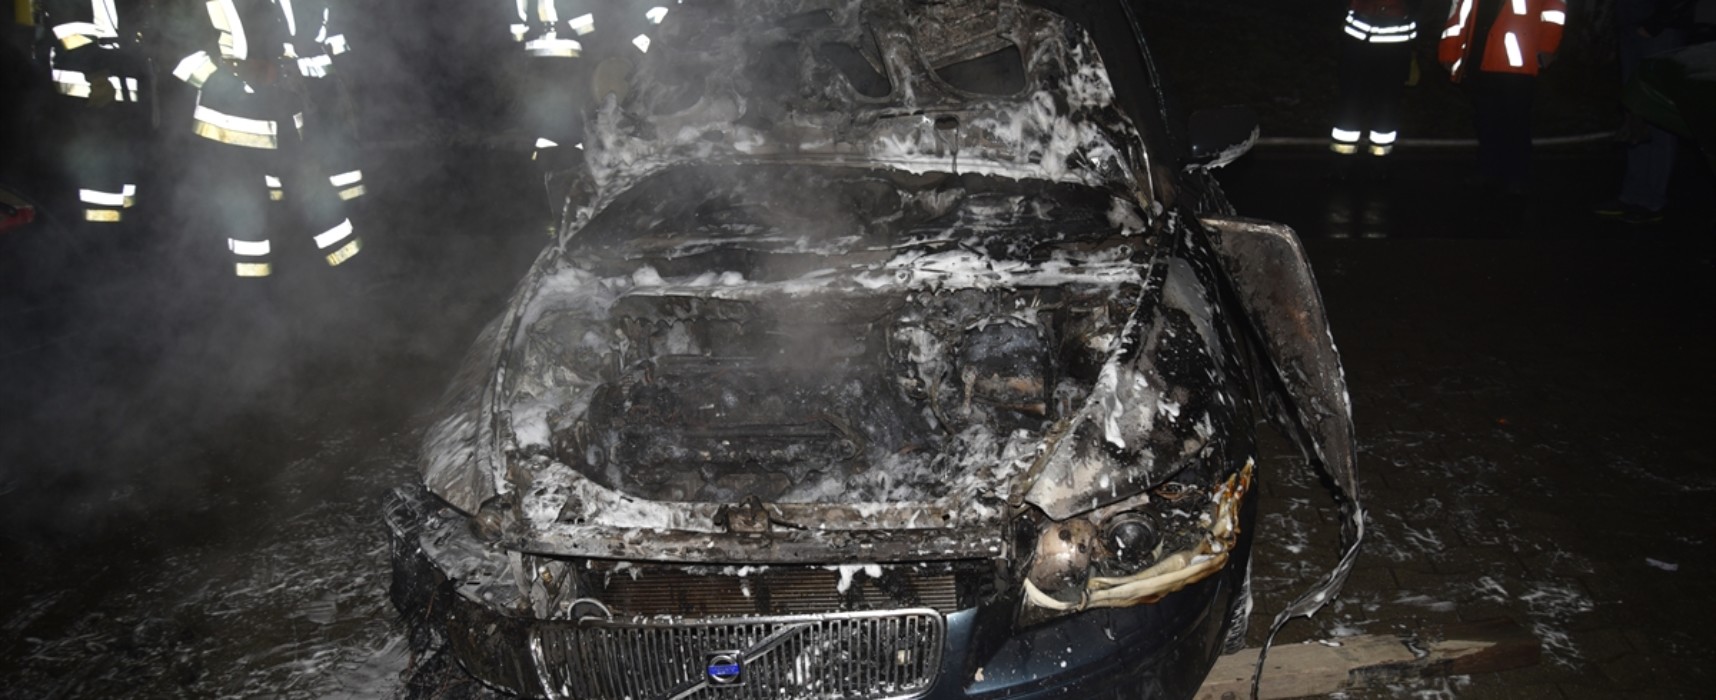 Feuerwehr Scharans muß zu Autobrand ausrücken